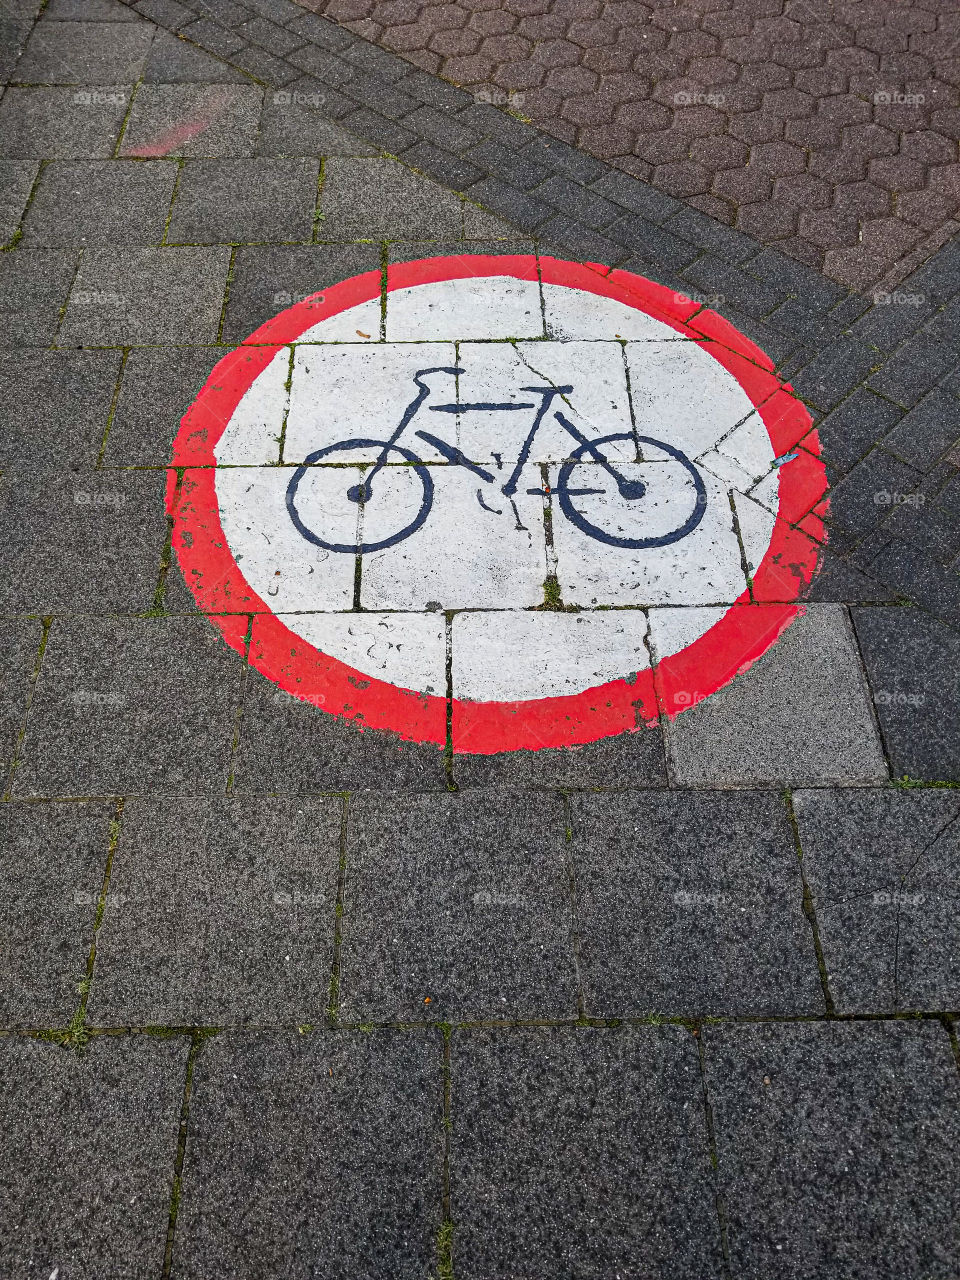 Bike symbol on sidewalk